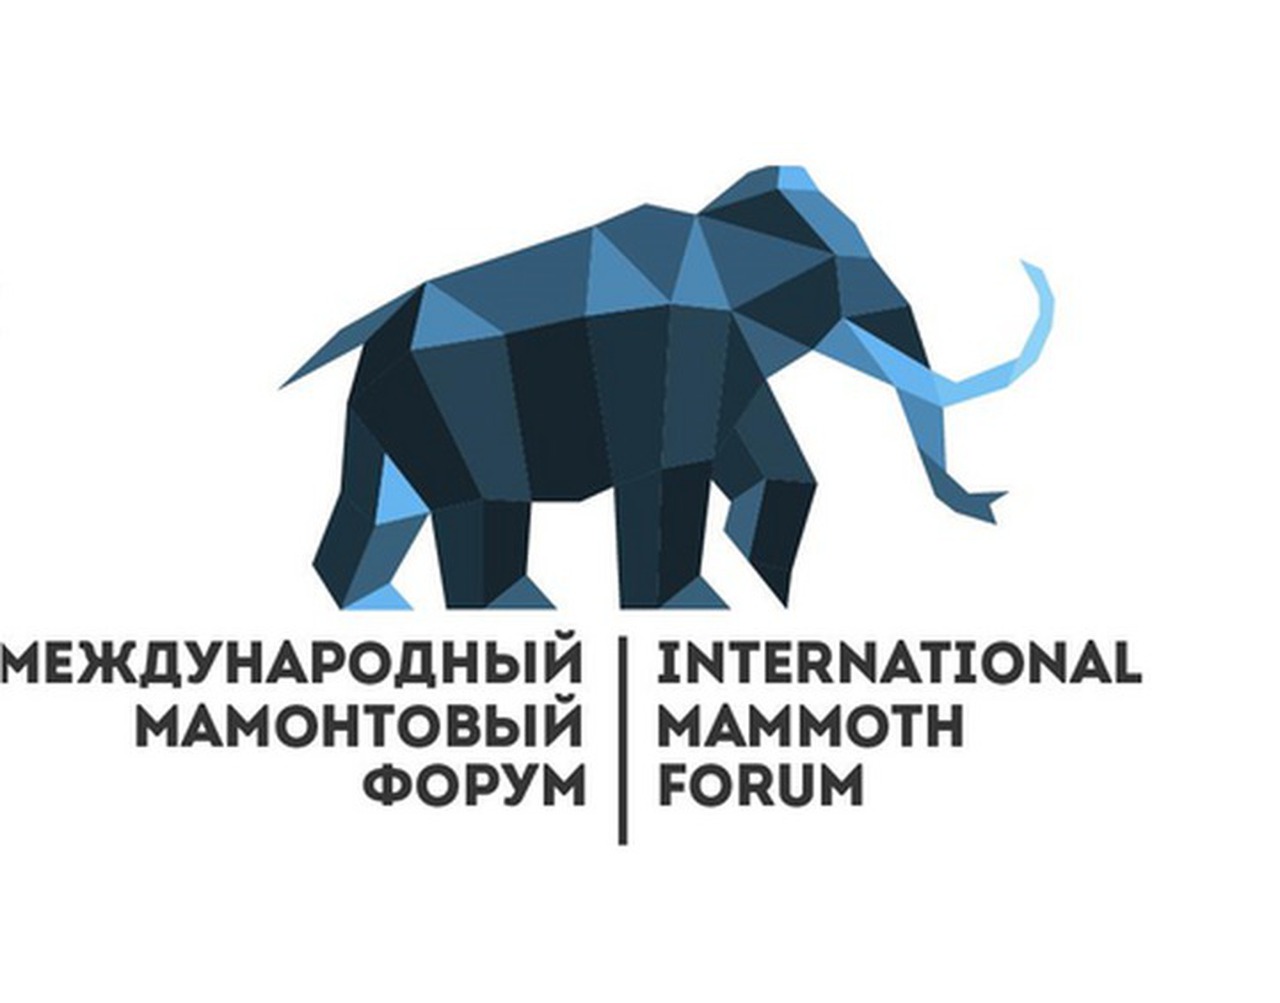 Мамонтовый форум в Якутске перенесли на 2023 год из-за политической обстановки и коронавируса